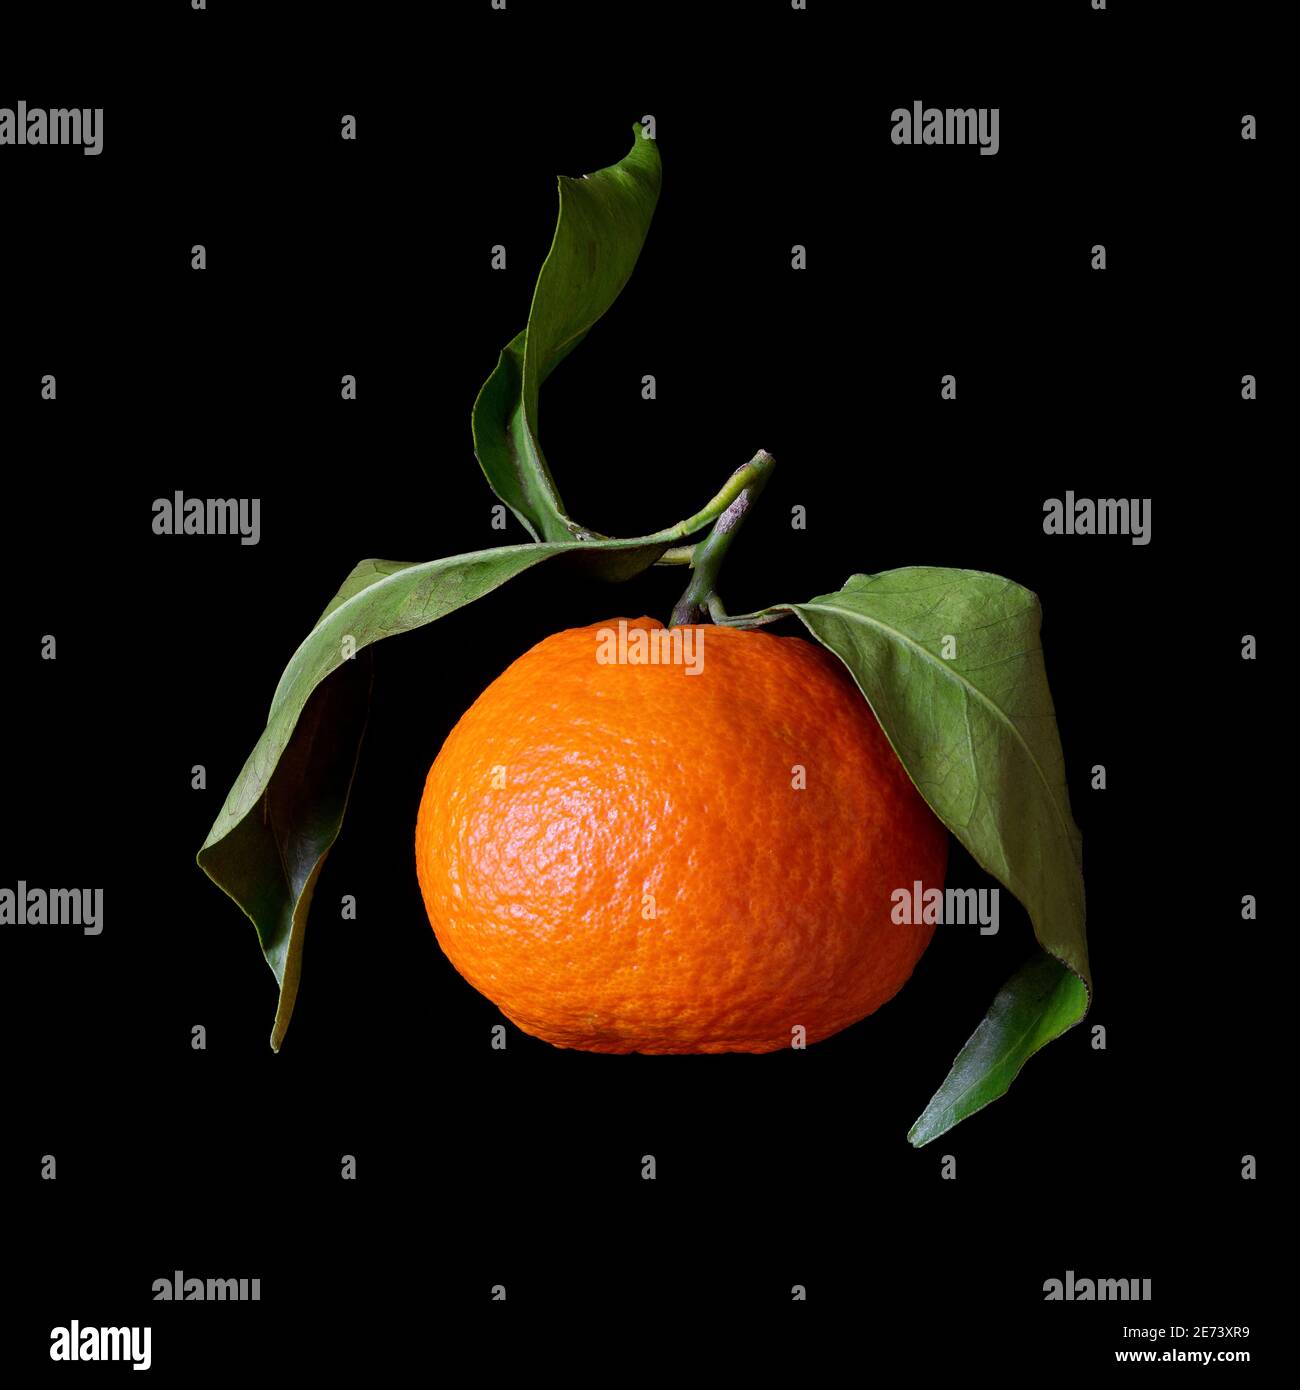 Clementine (Citrus x clementina) citrus fruit hybrid Stock Photo